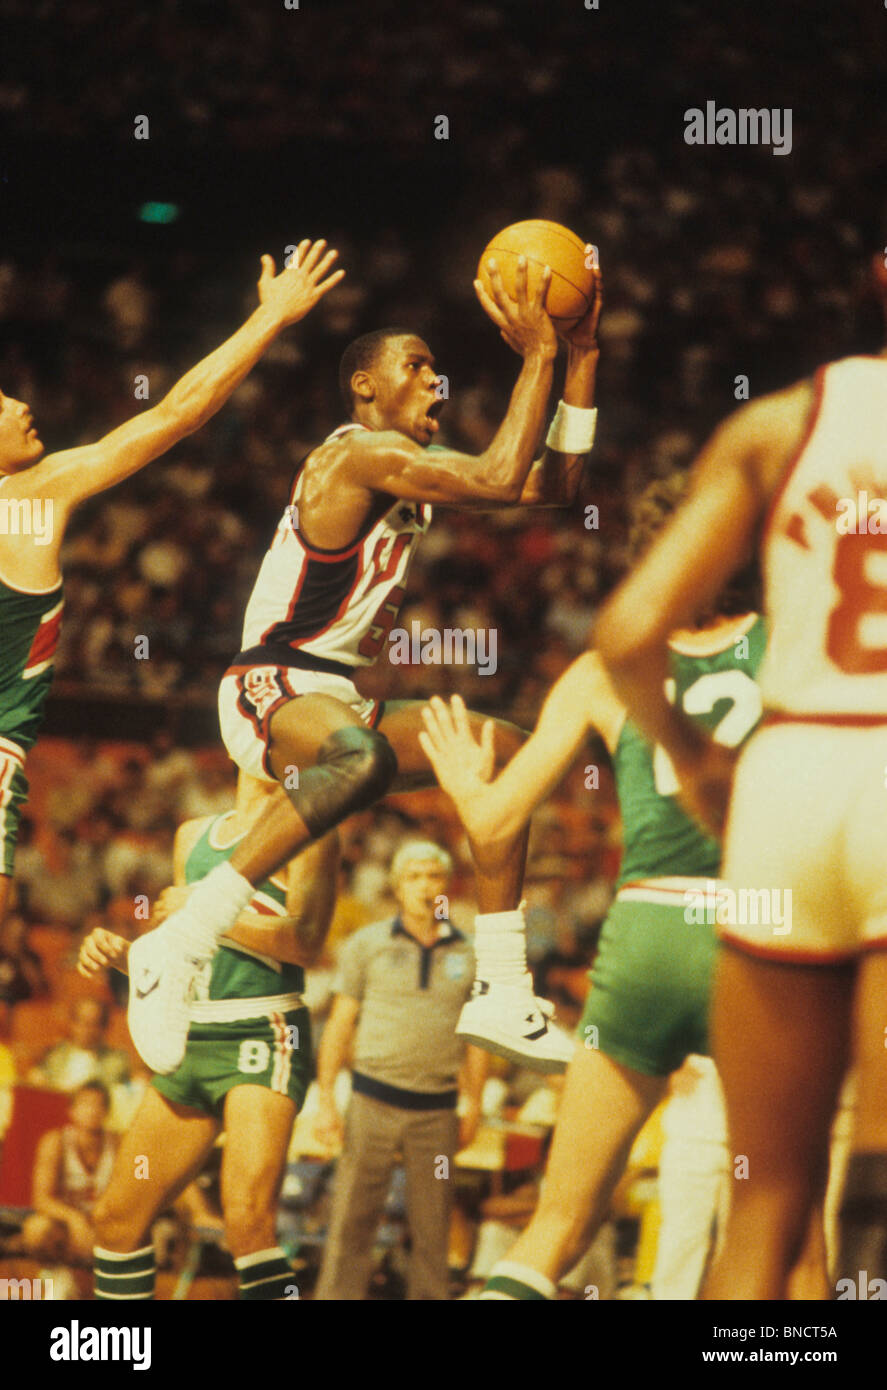 Michael Jordan (USA) au cours d'un match de basket-ball entre les États-Unis et le Brésil au 1983 Jeux Panaméricains. Banque D'Images